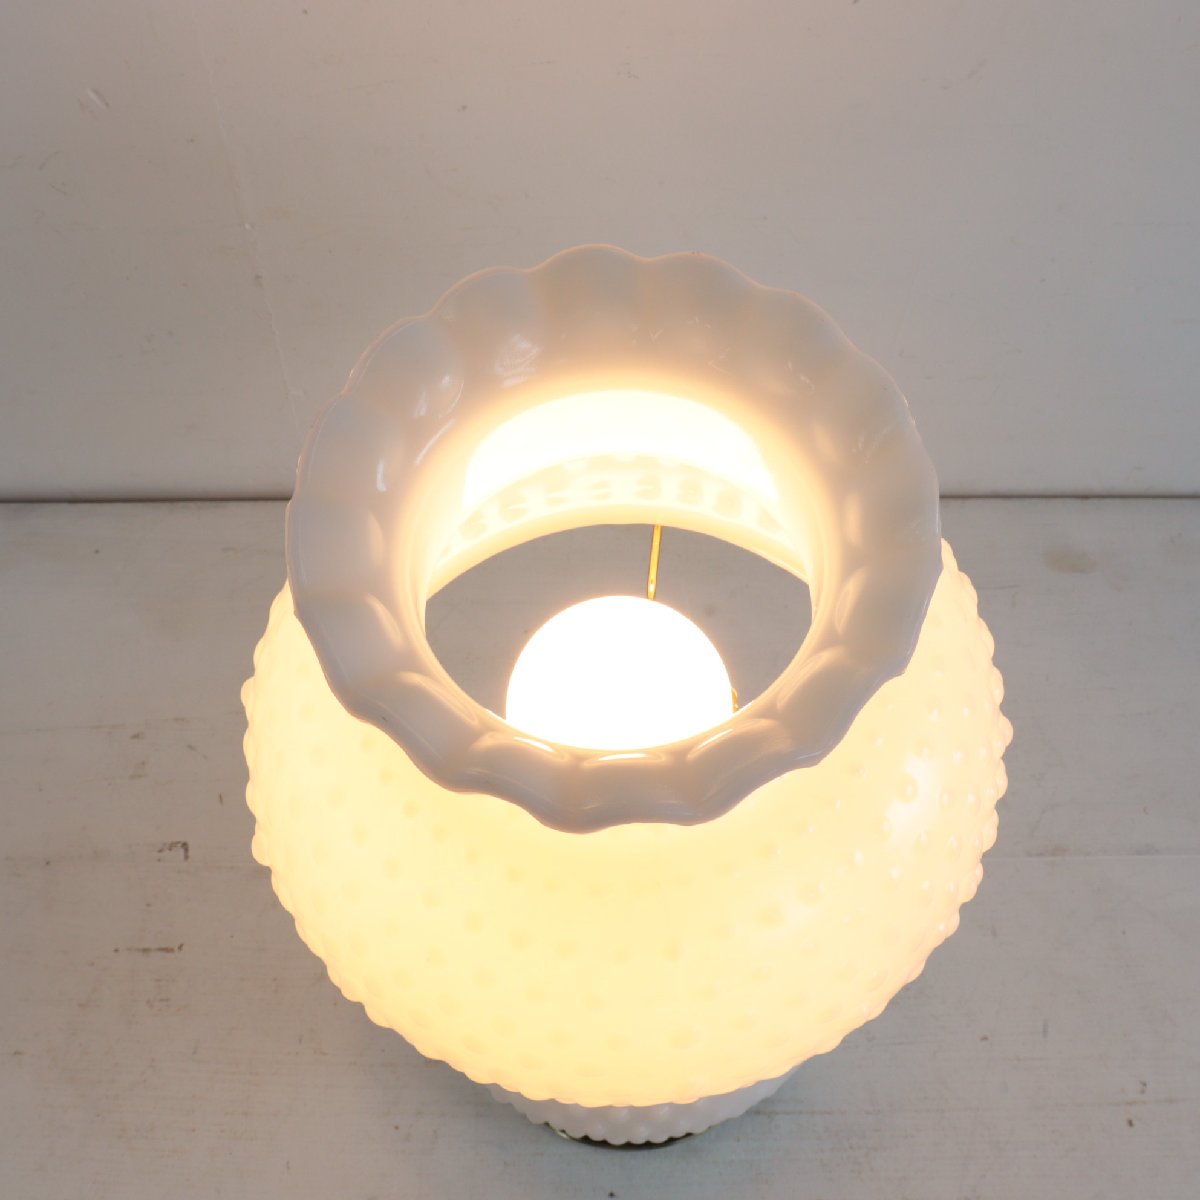 ホブネイル ミルクガラス テーブルランプ アメリカ ヴィンテージ 照明